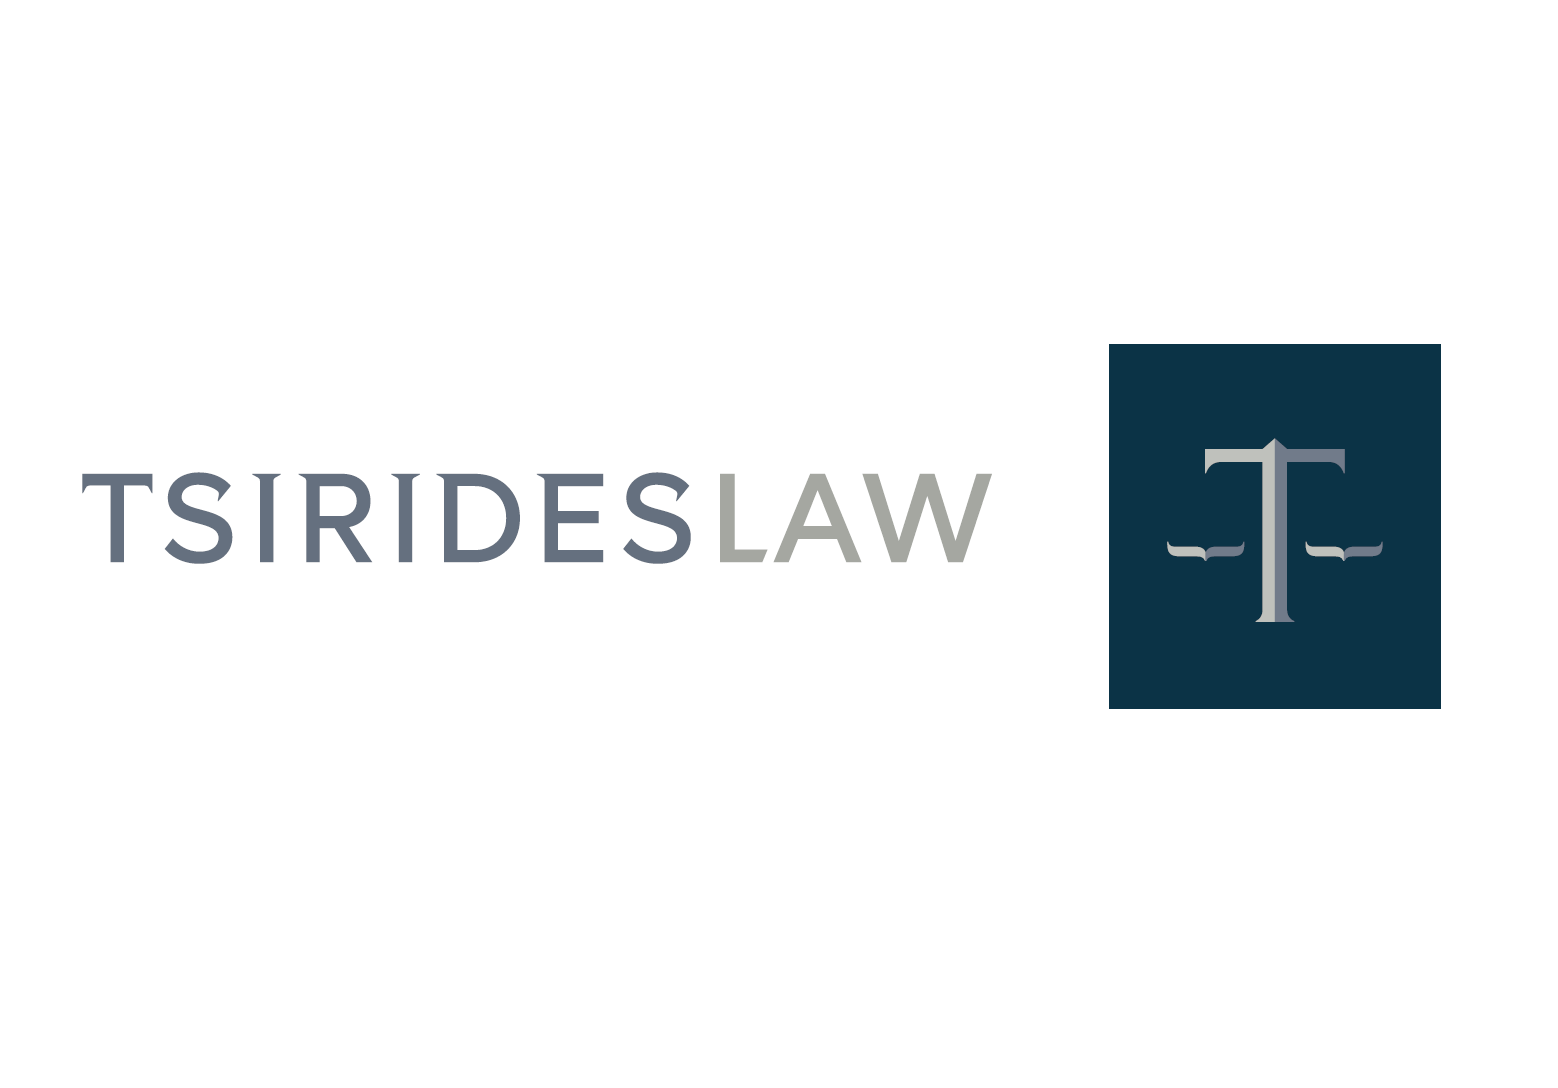 Tsirides Law